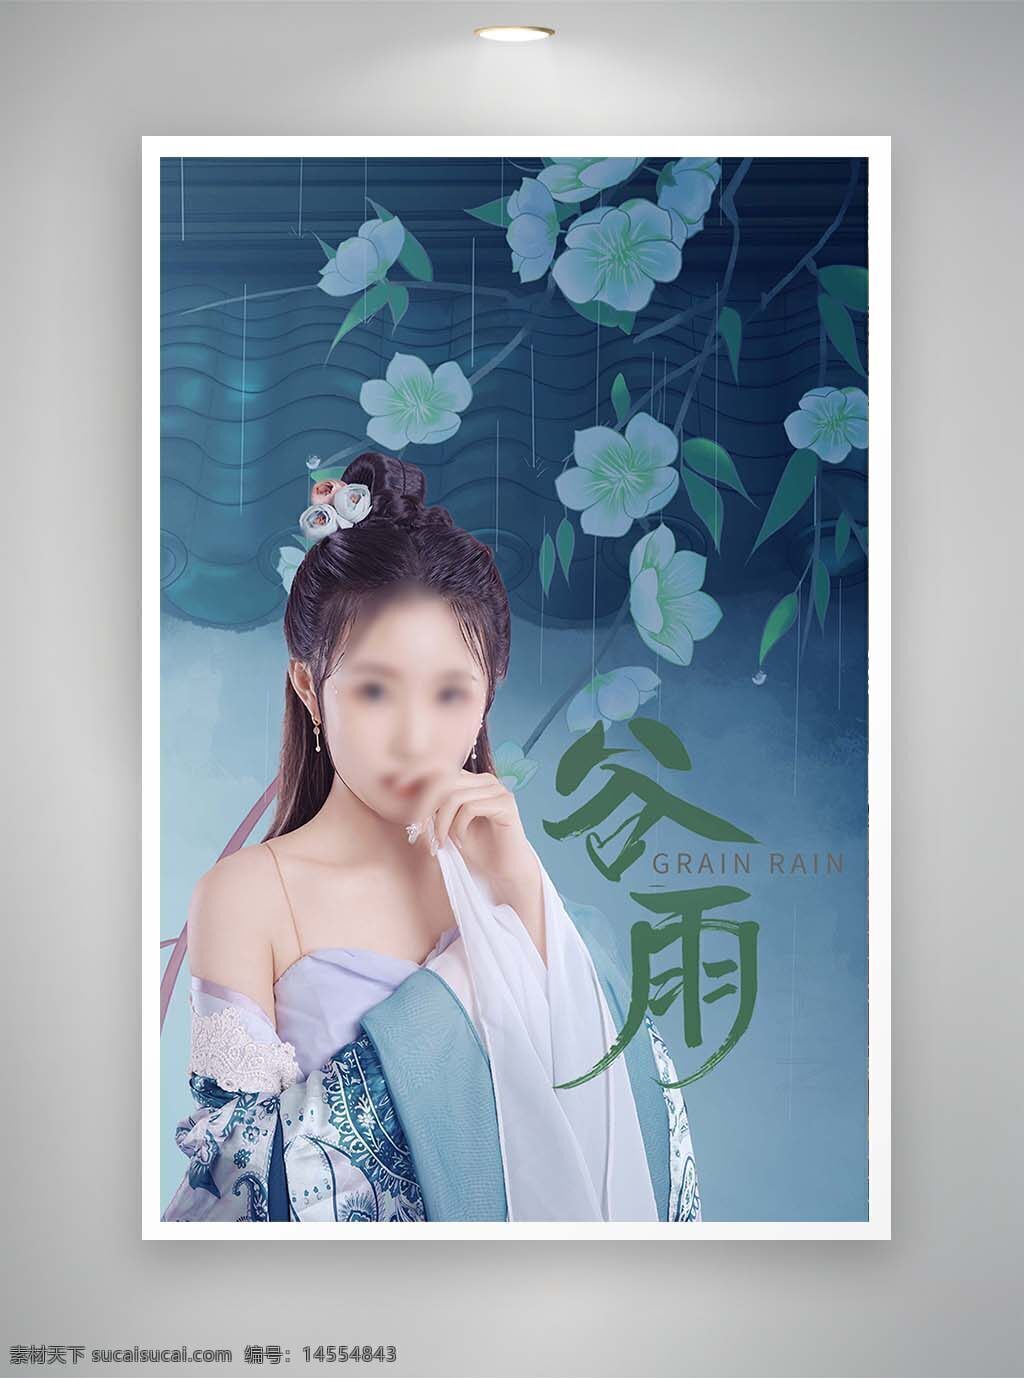 中国风海报 节日海报 促销海报 谷雨海报 古风海报